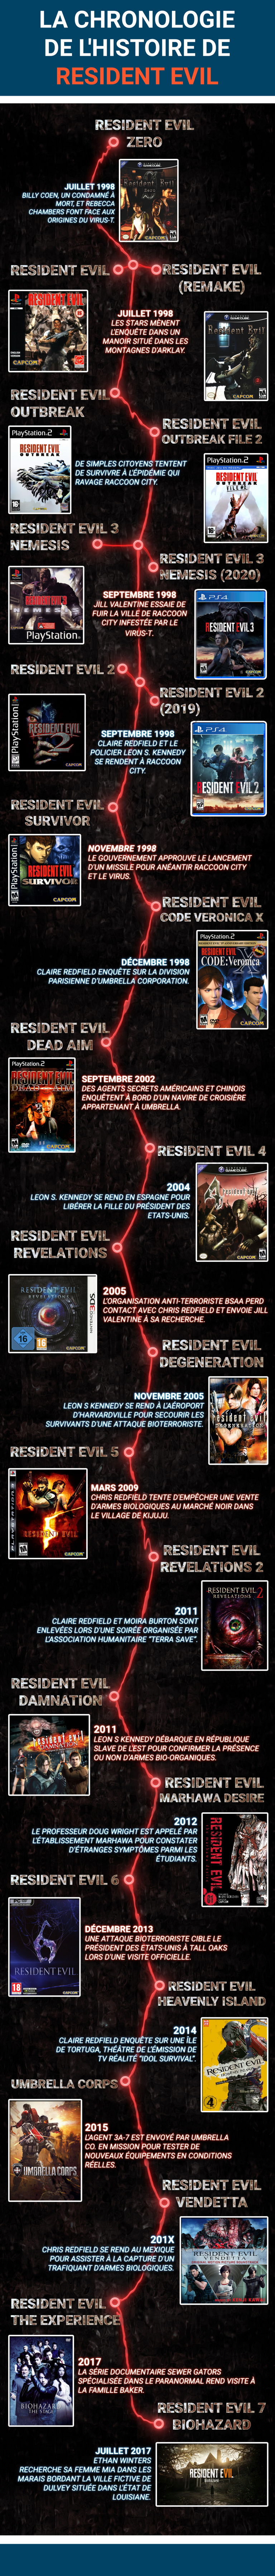 Resident Evil : Chronologie de l'histoire (jeux et univers étendu)